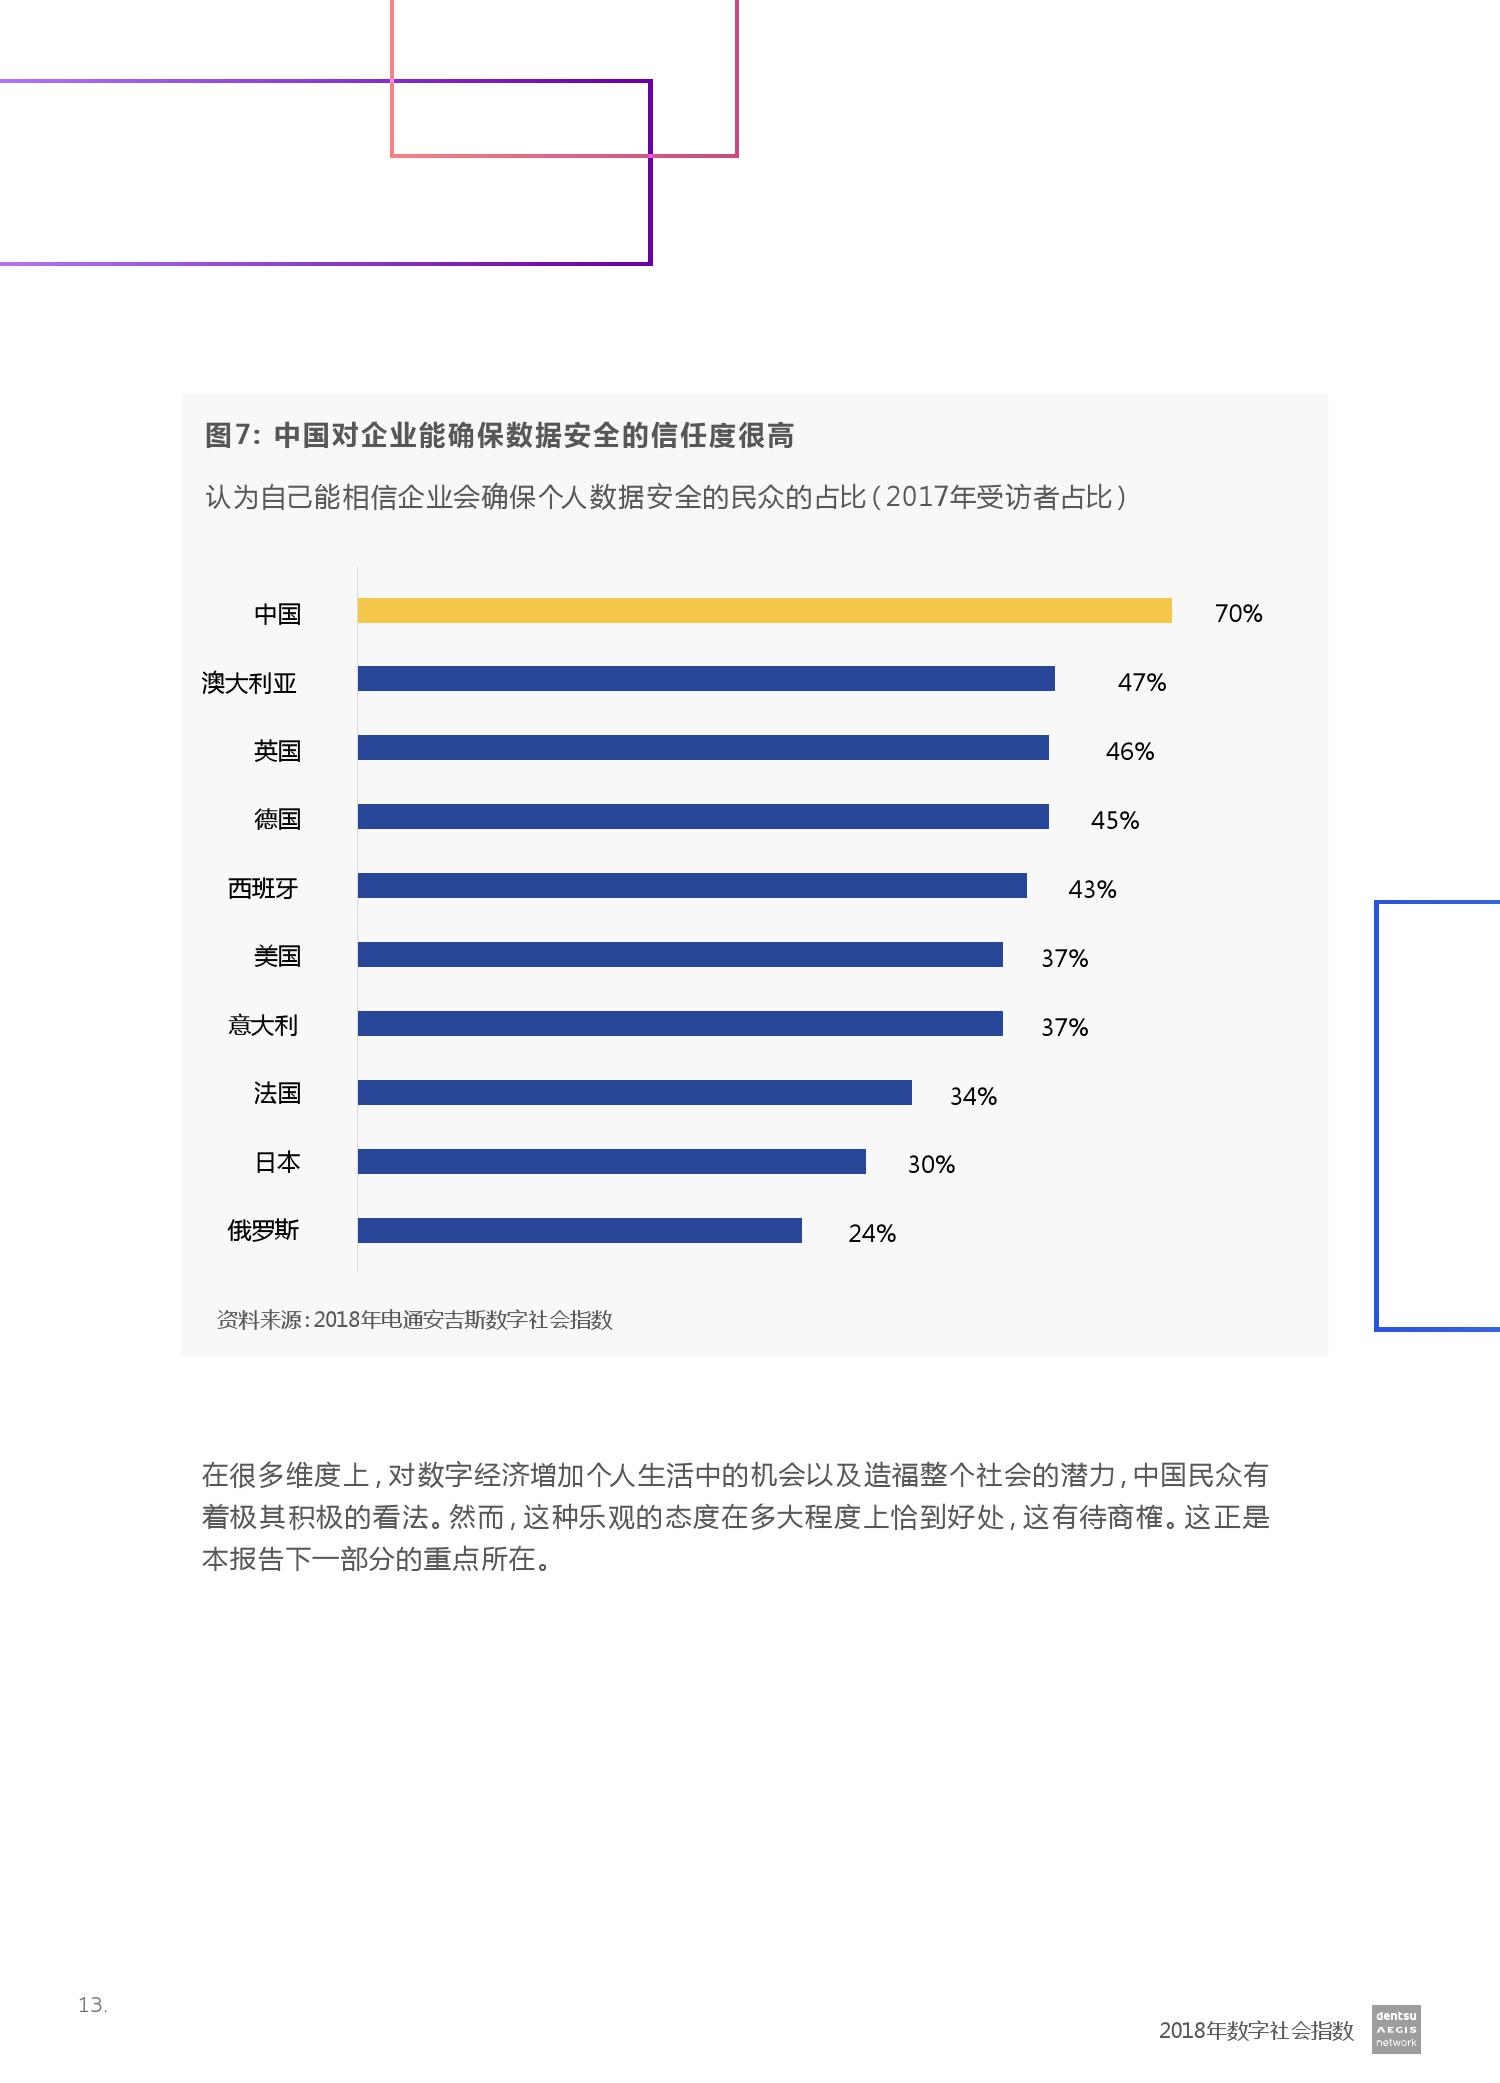 2018数字社会指数发展分析:中国综合排名全球